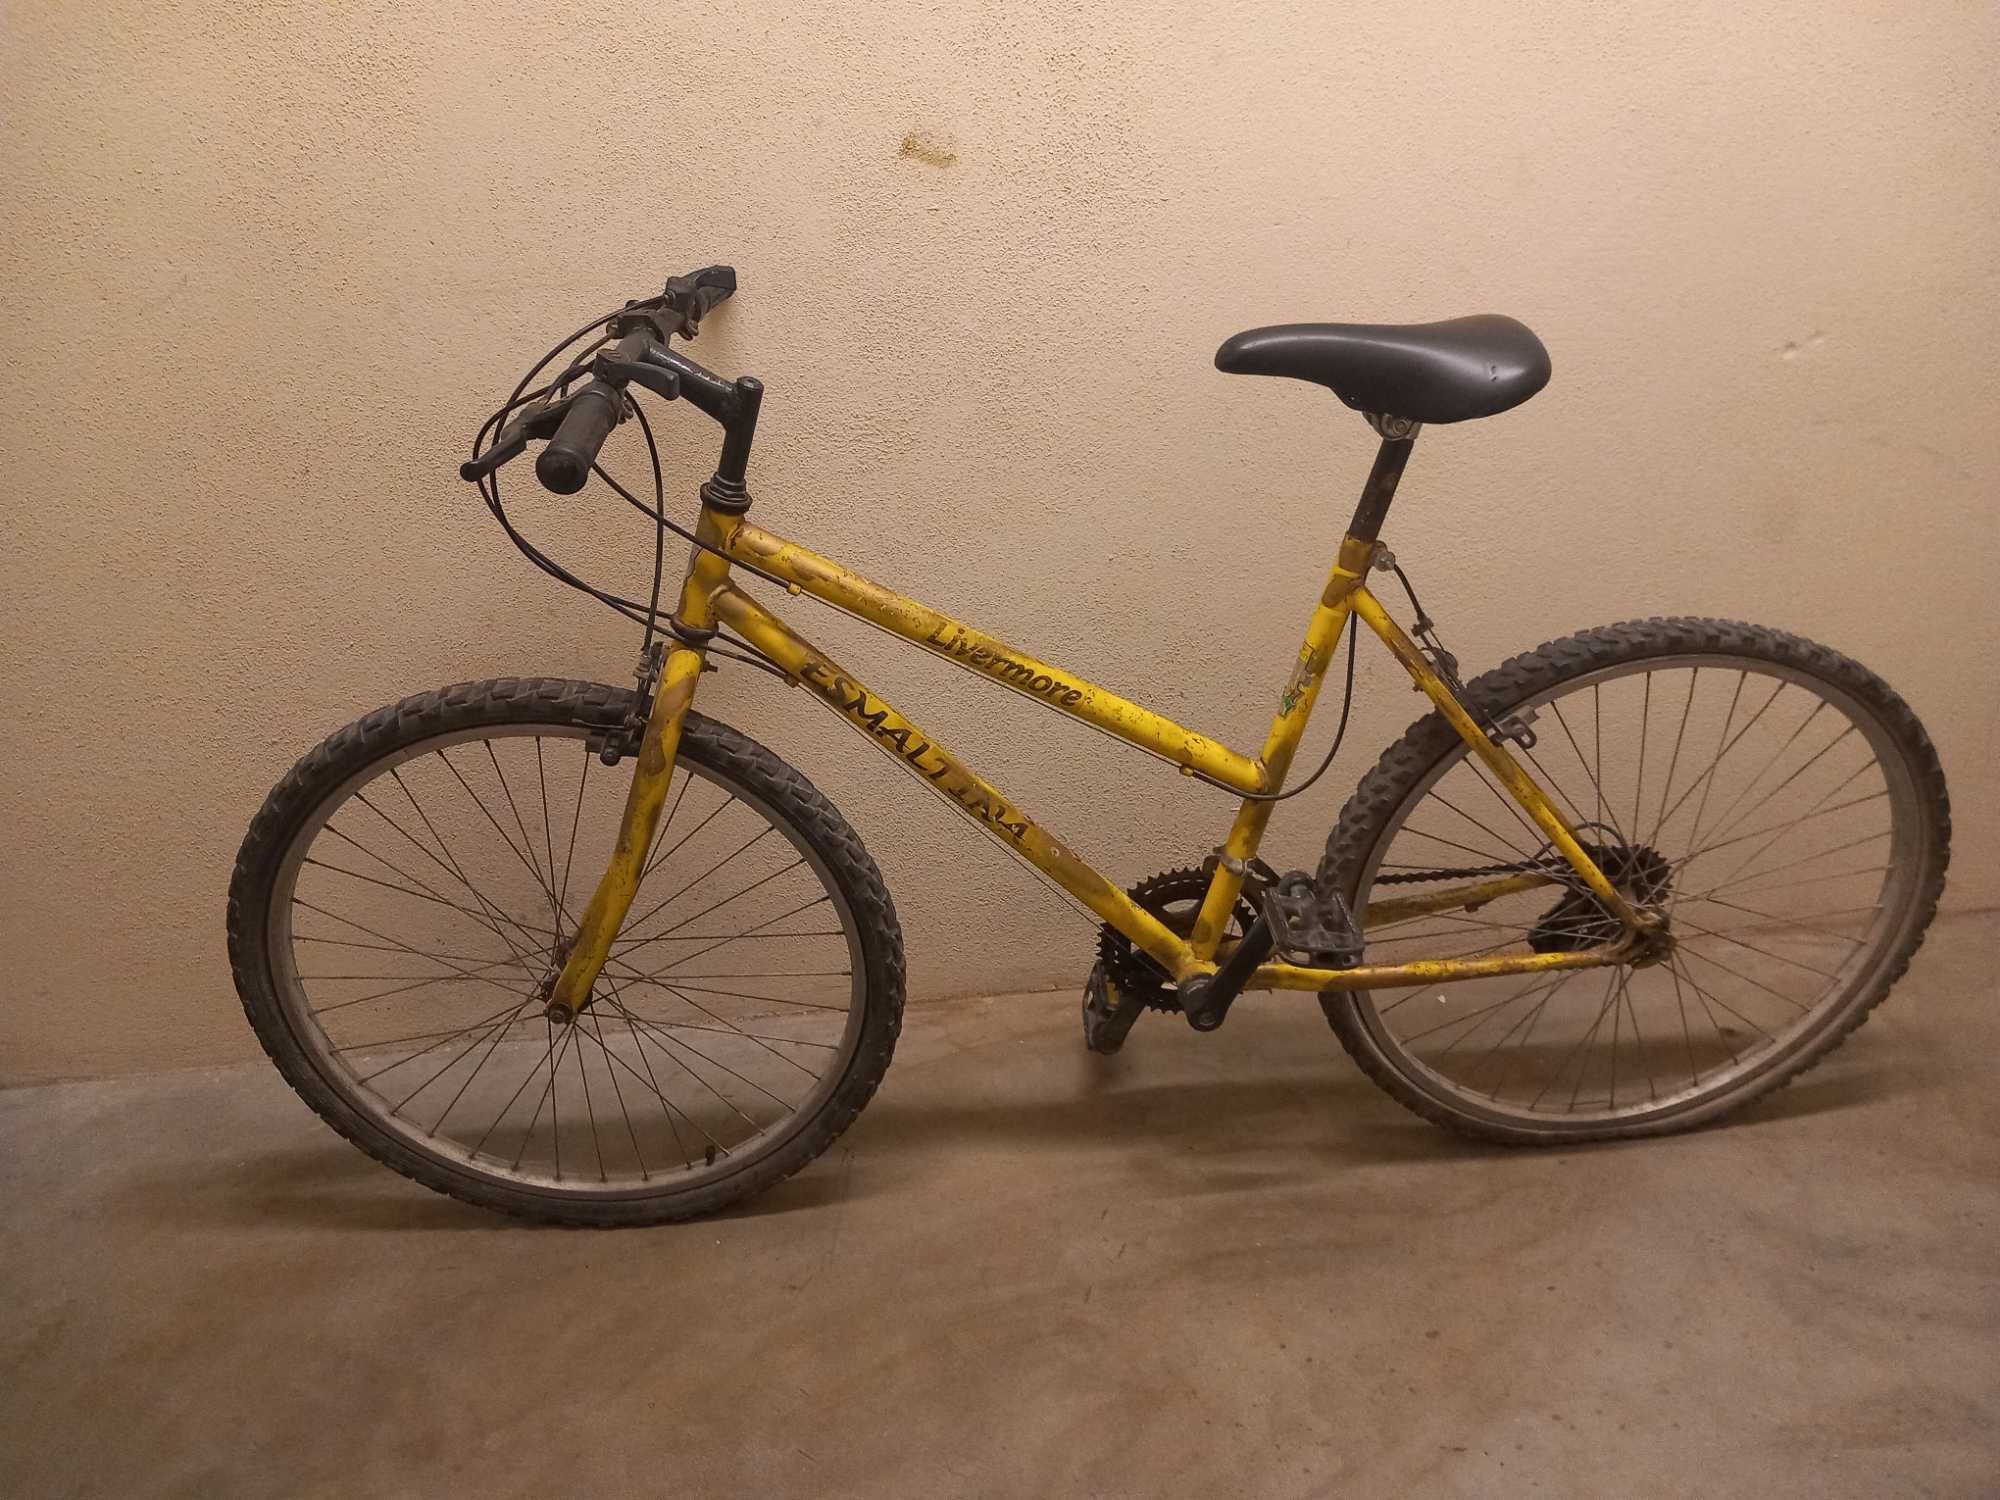 Bicicleta antiga com pouco uso